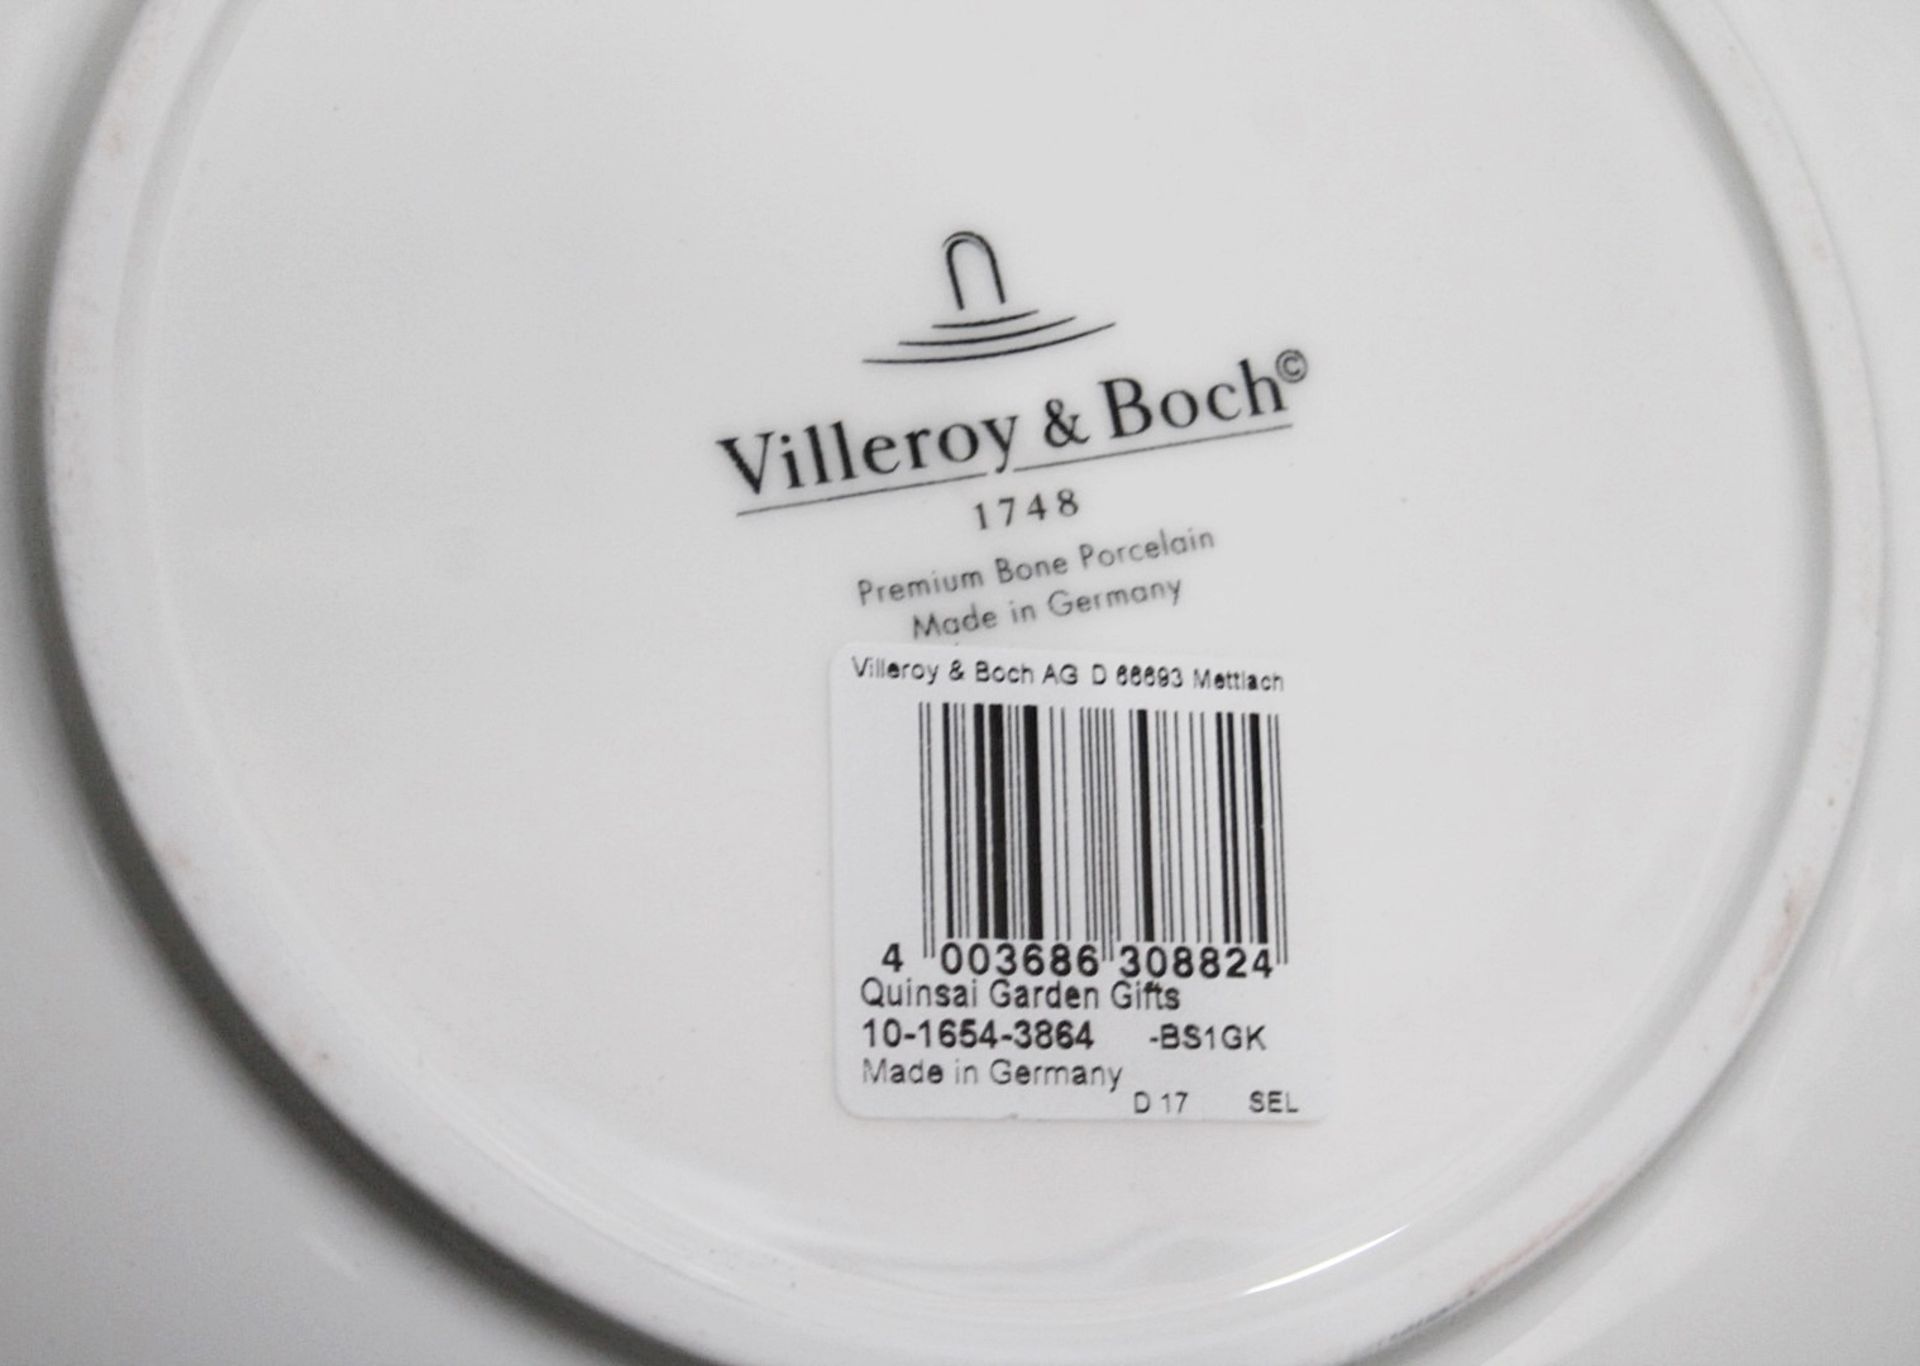 1 x VILLEROY & BOCH SIGNATURE - Premium Bone Porcelain 'Quinsai Garden' Fruit Bowl - RRP £238.00 - Image 6 of 7